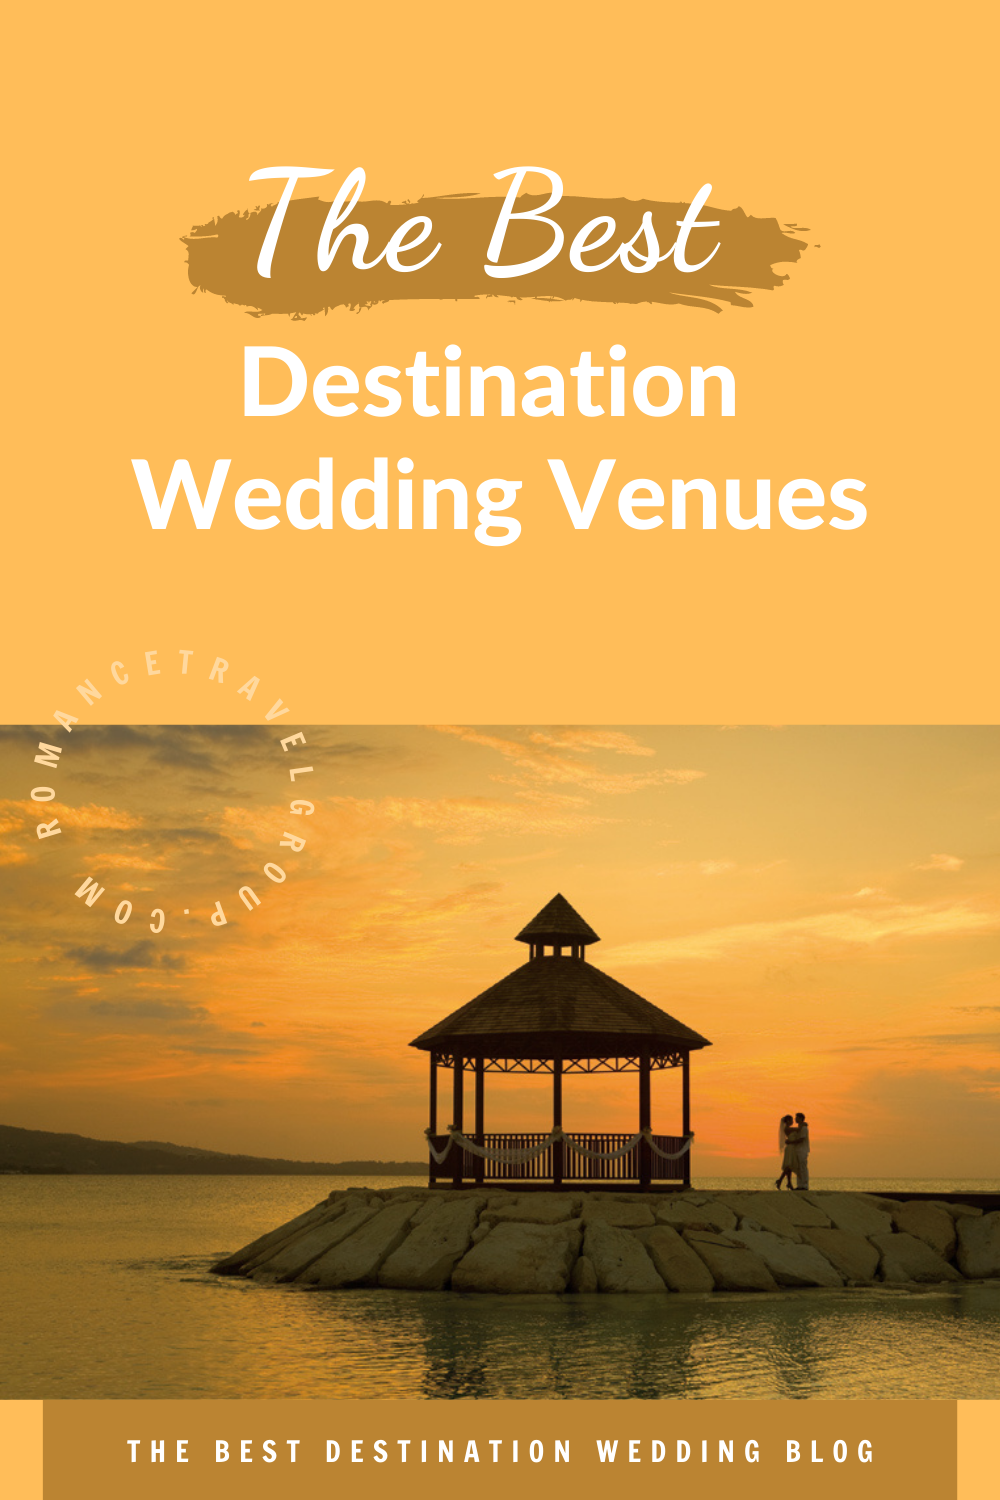 The Best Destination Wedding Venues